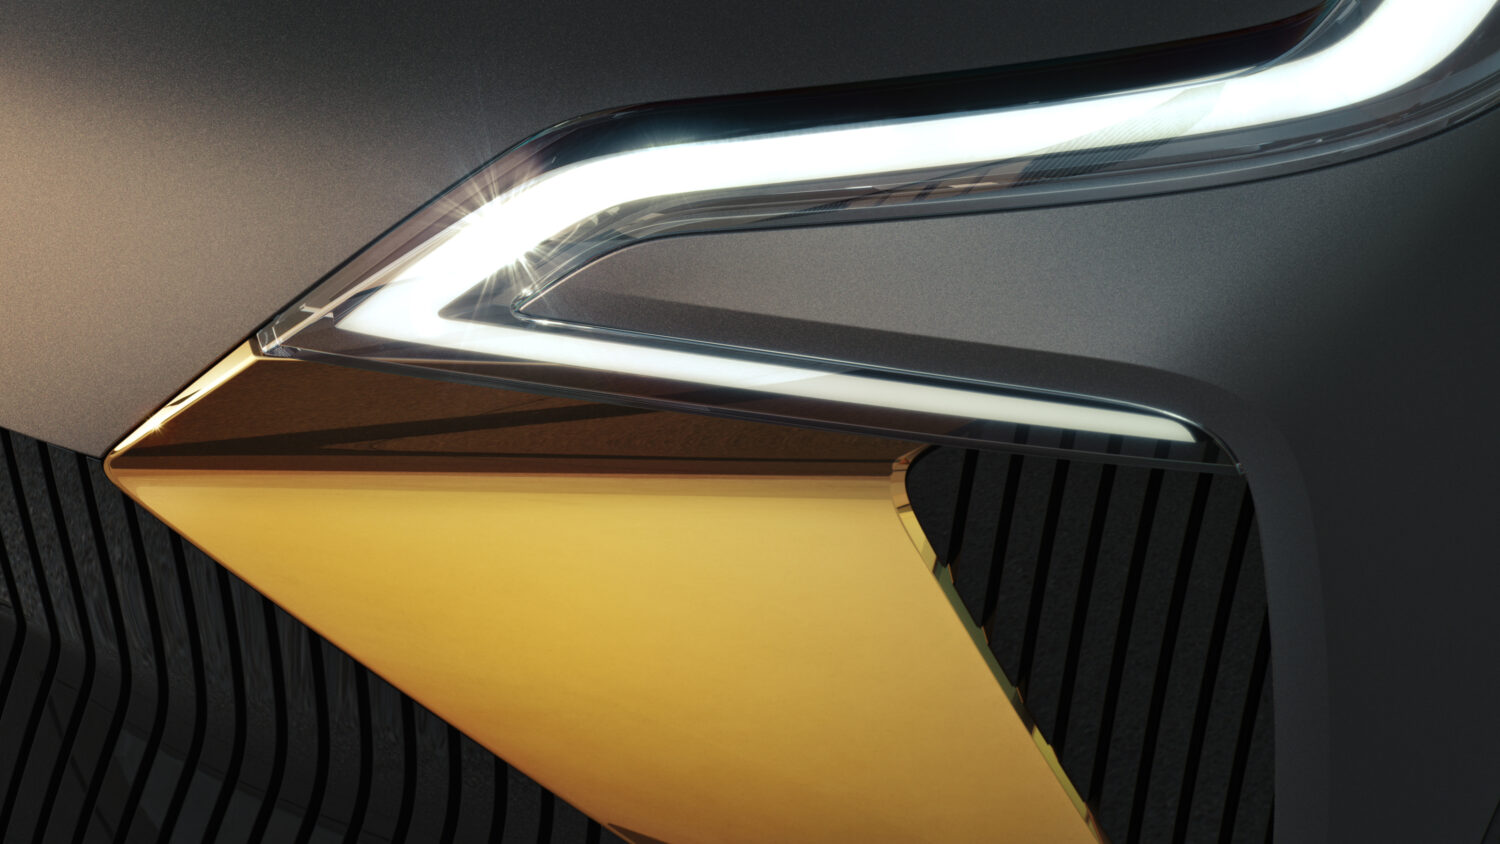 2020 - Teaser showcar annonant le futur crossover lectrique de Renault.jpg